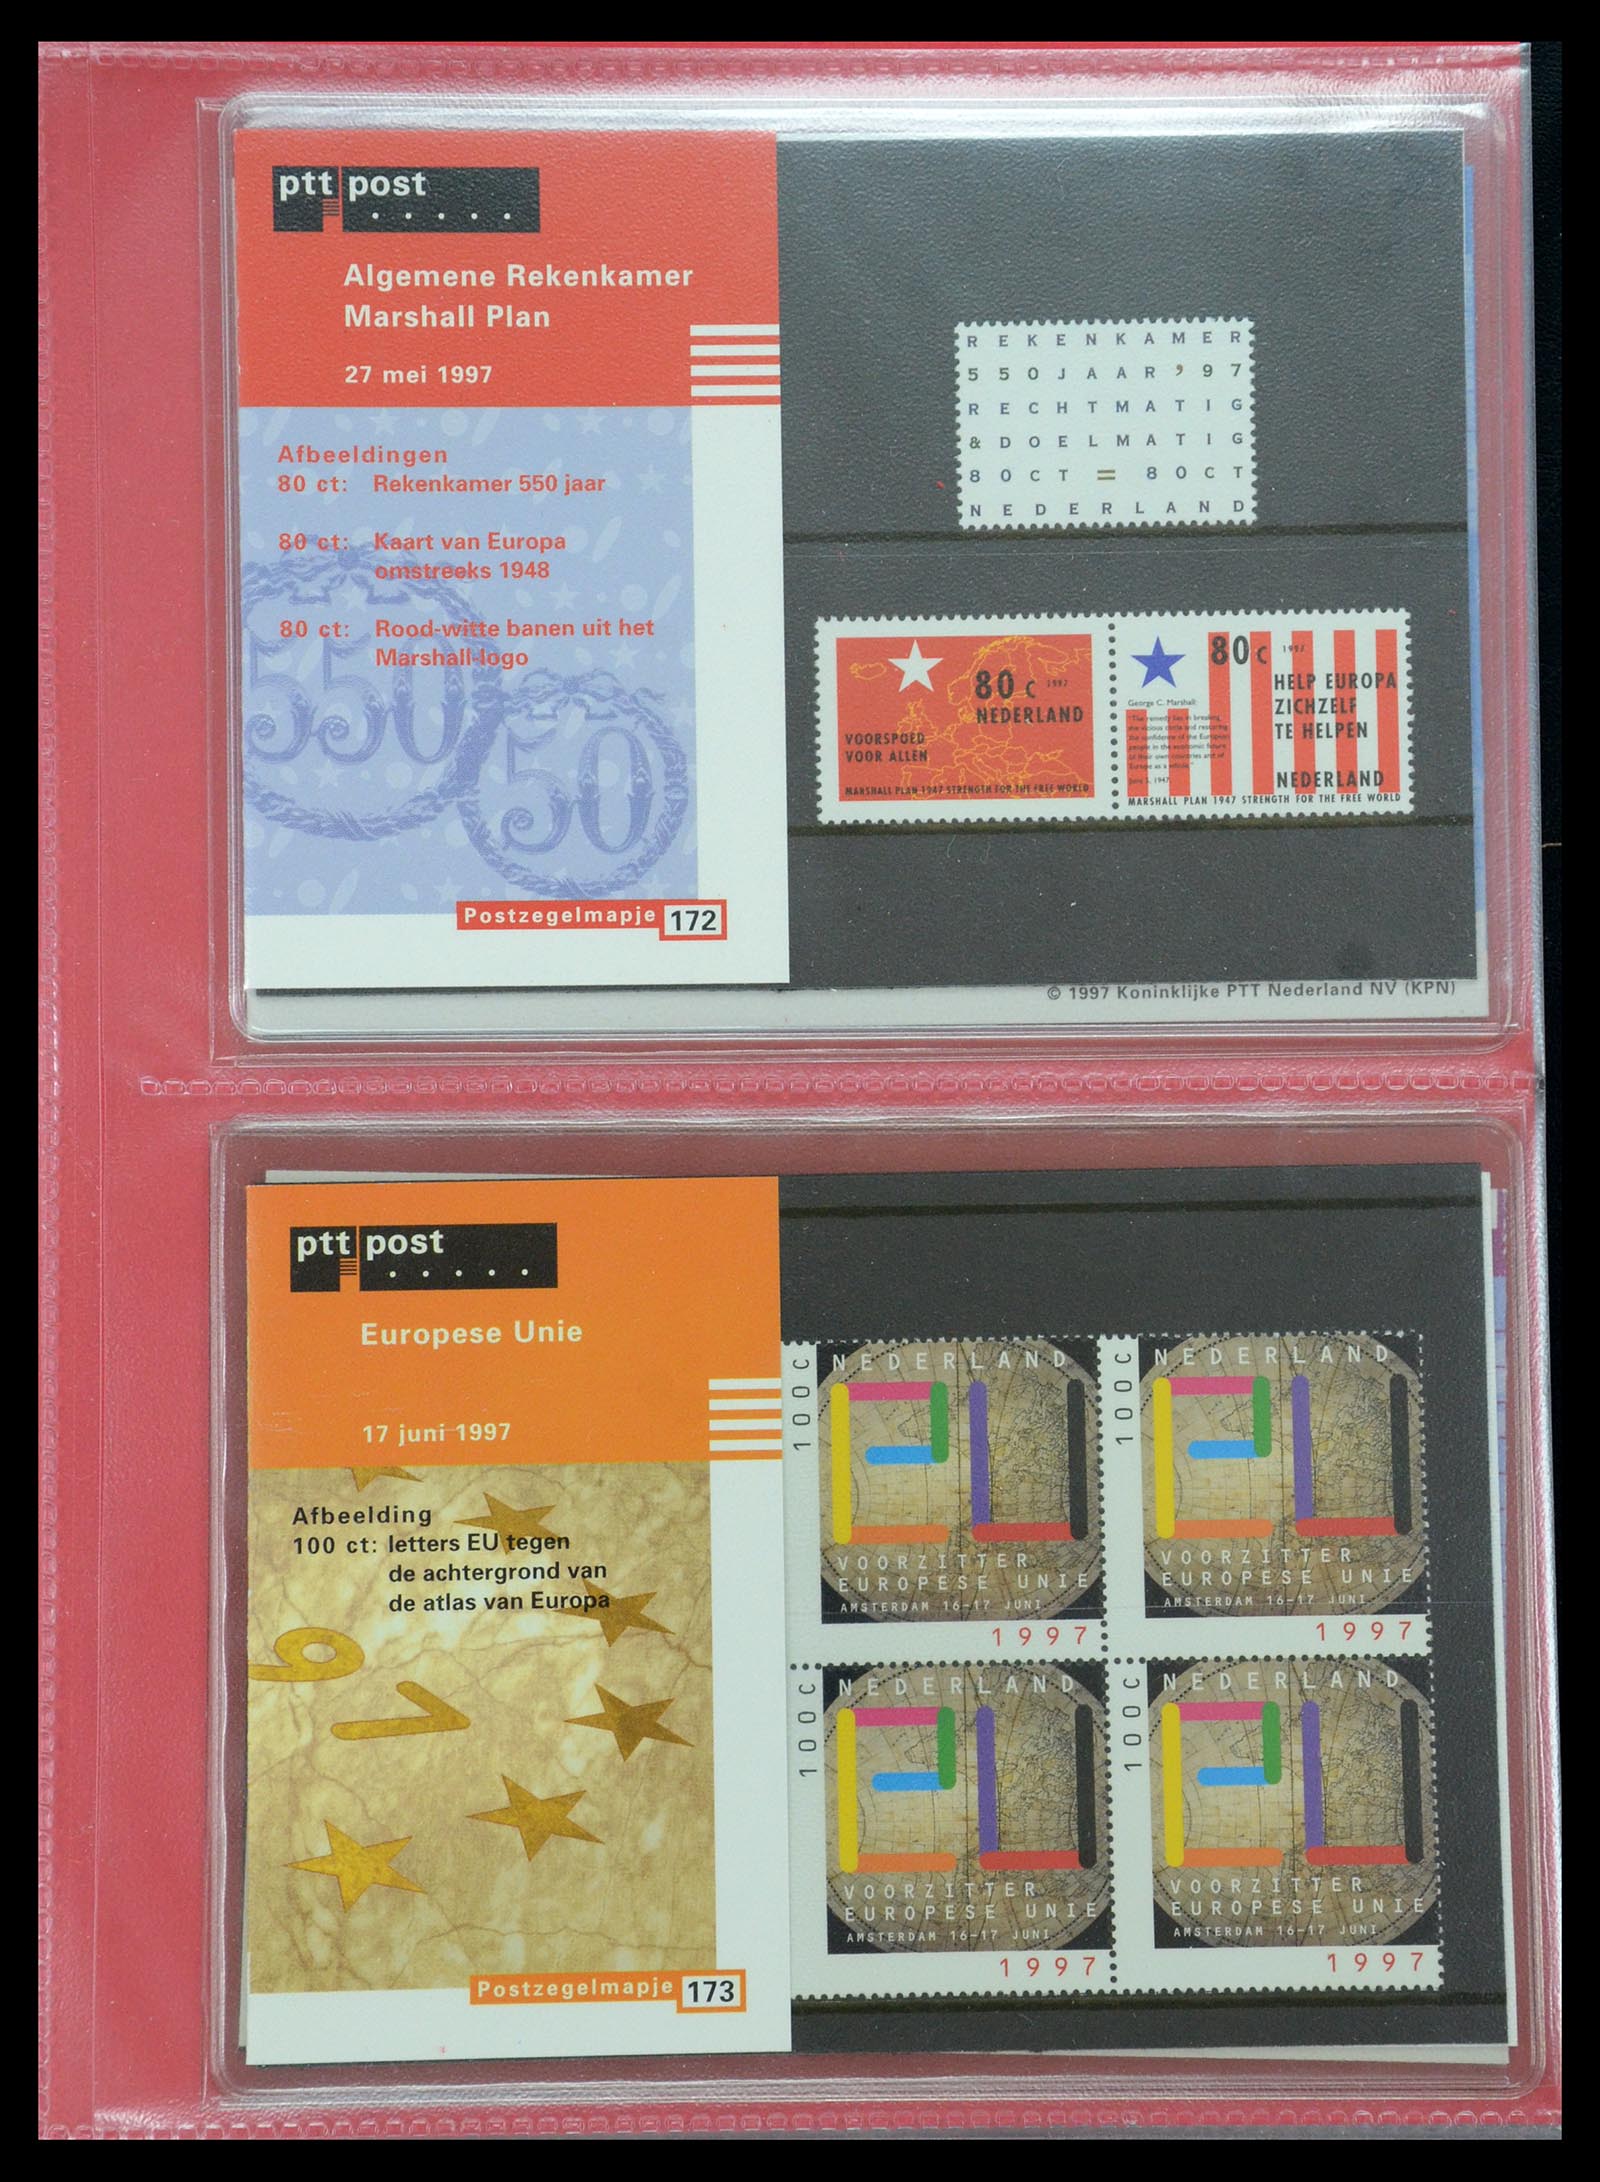 35692 089 - Stamp Collection 35692 Netherlands presentation packs 1982-2021!!